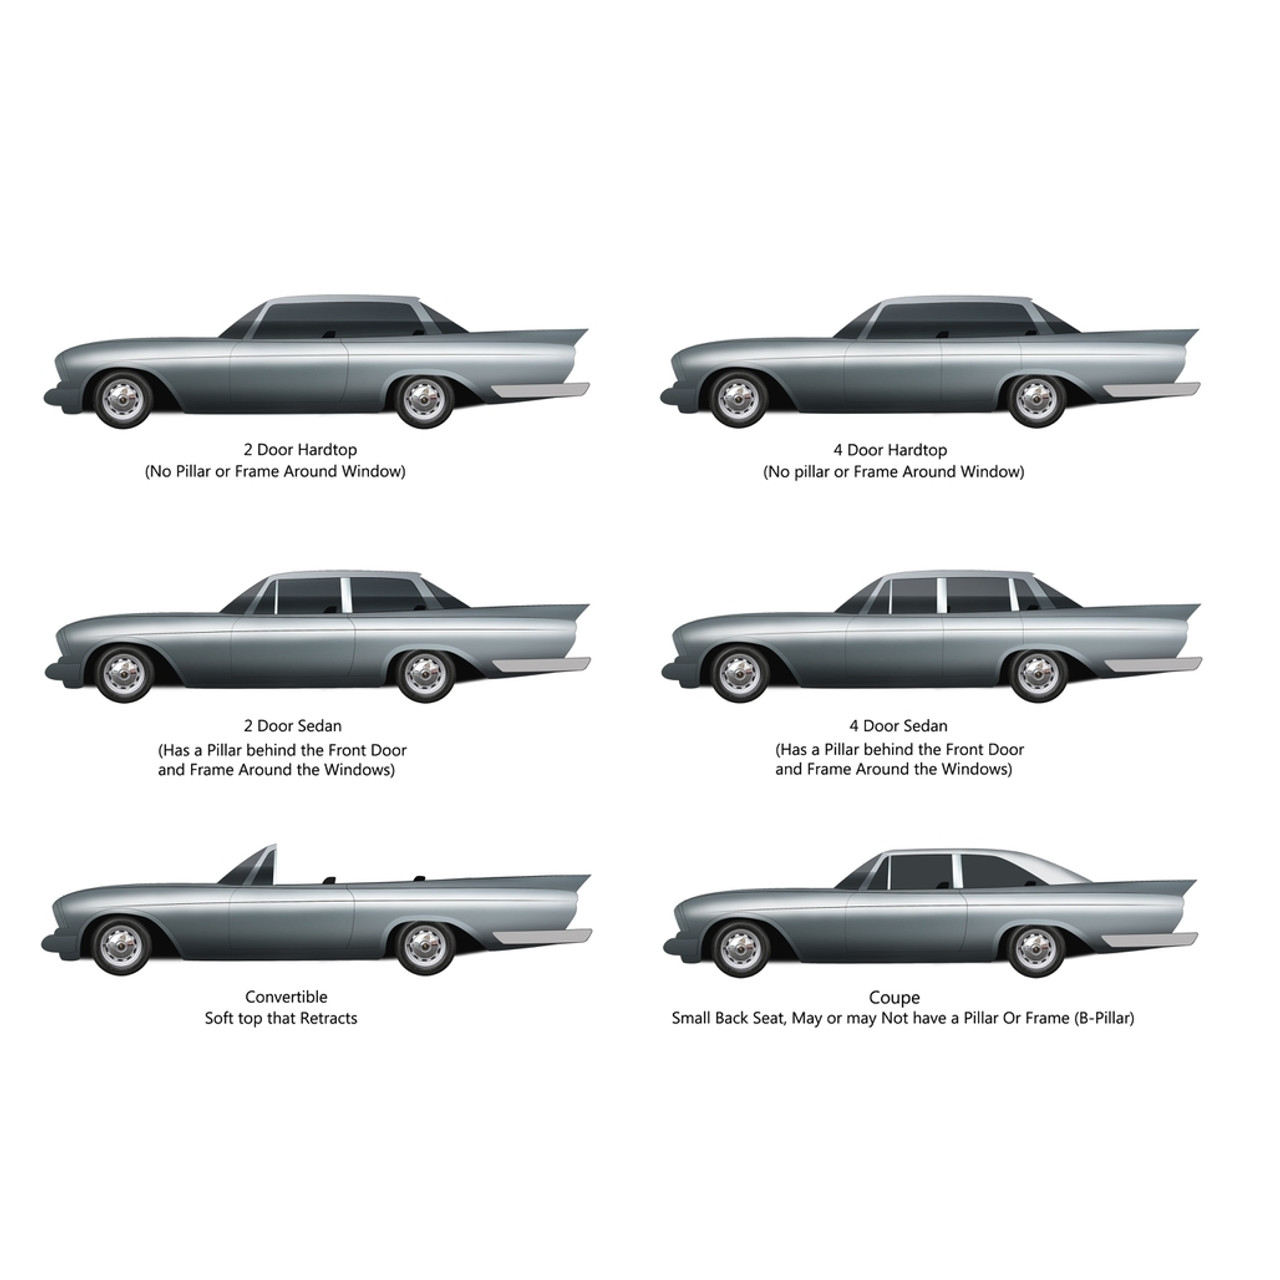 1962 Chevrolet Four-Door Wagon Wallpapers